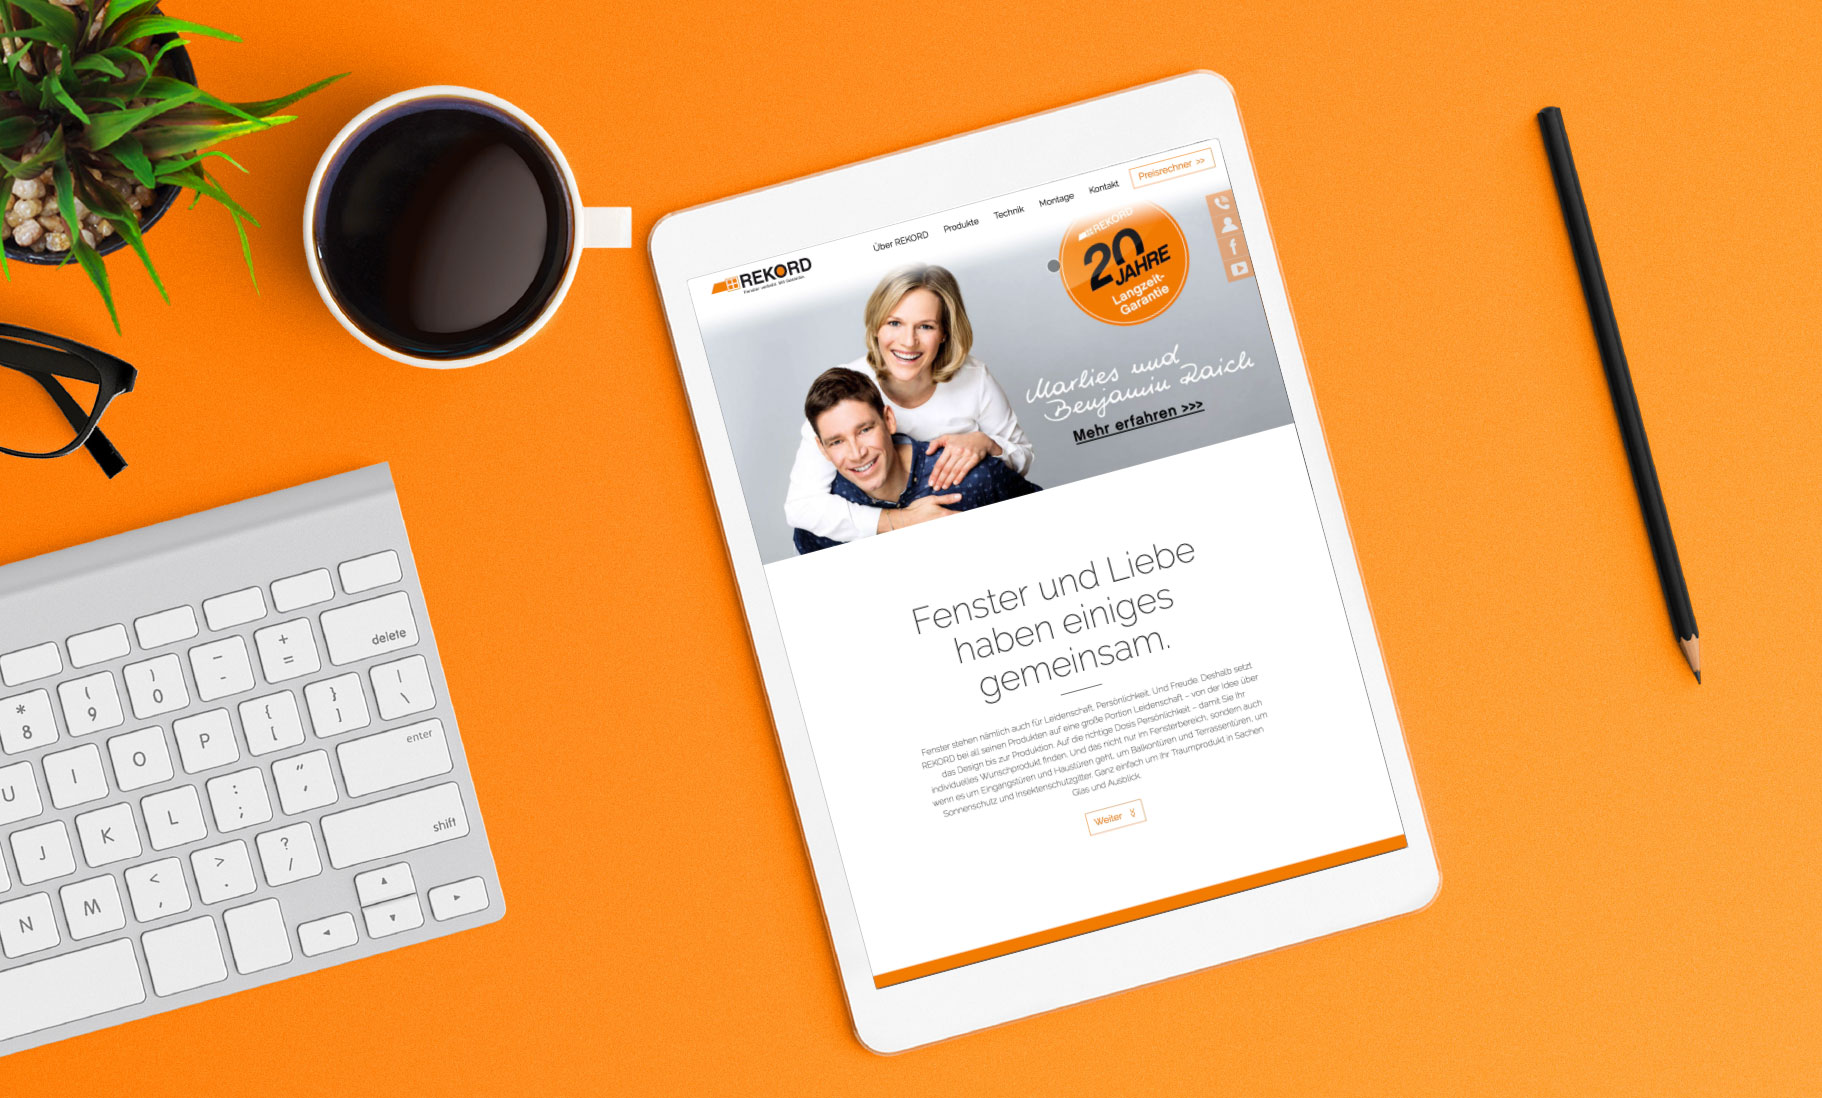 Tablet mit der Website, Farben weiß, schwarz, orange, Kaffe und Bleistift